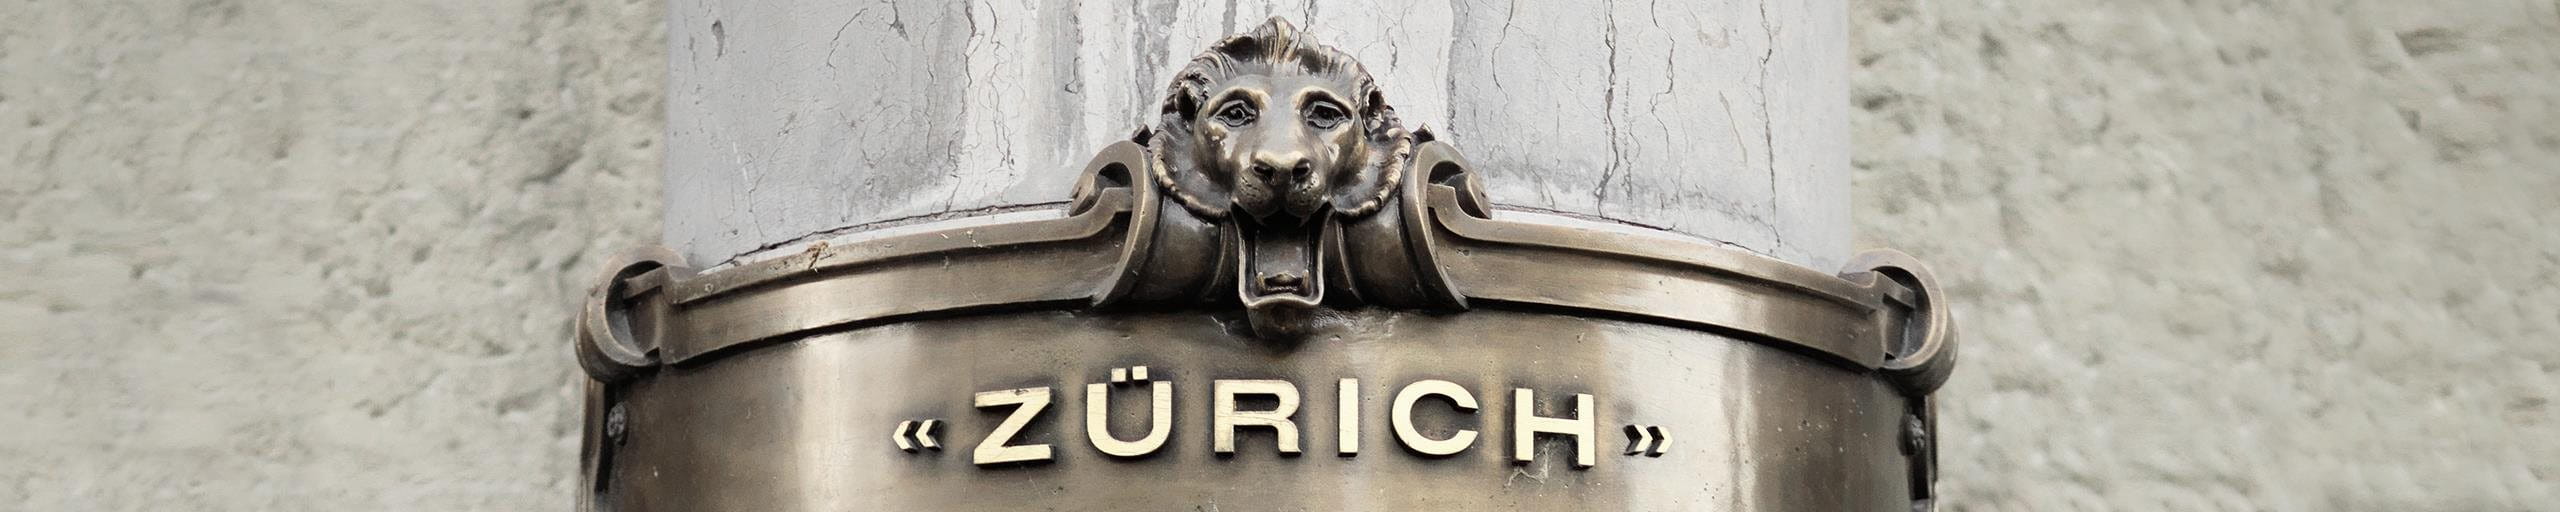 Una colonno con la scritta della Zurich.